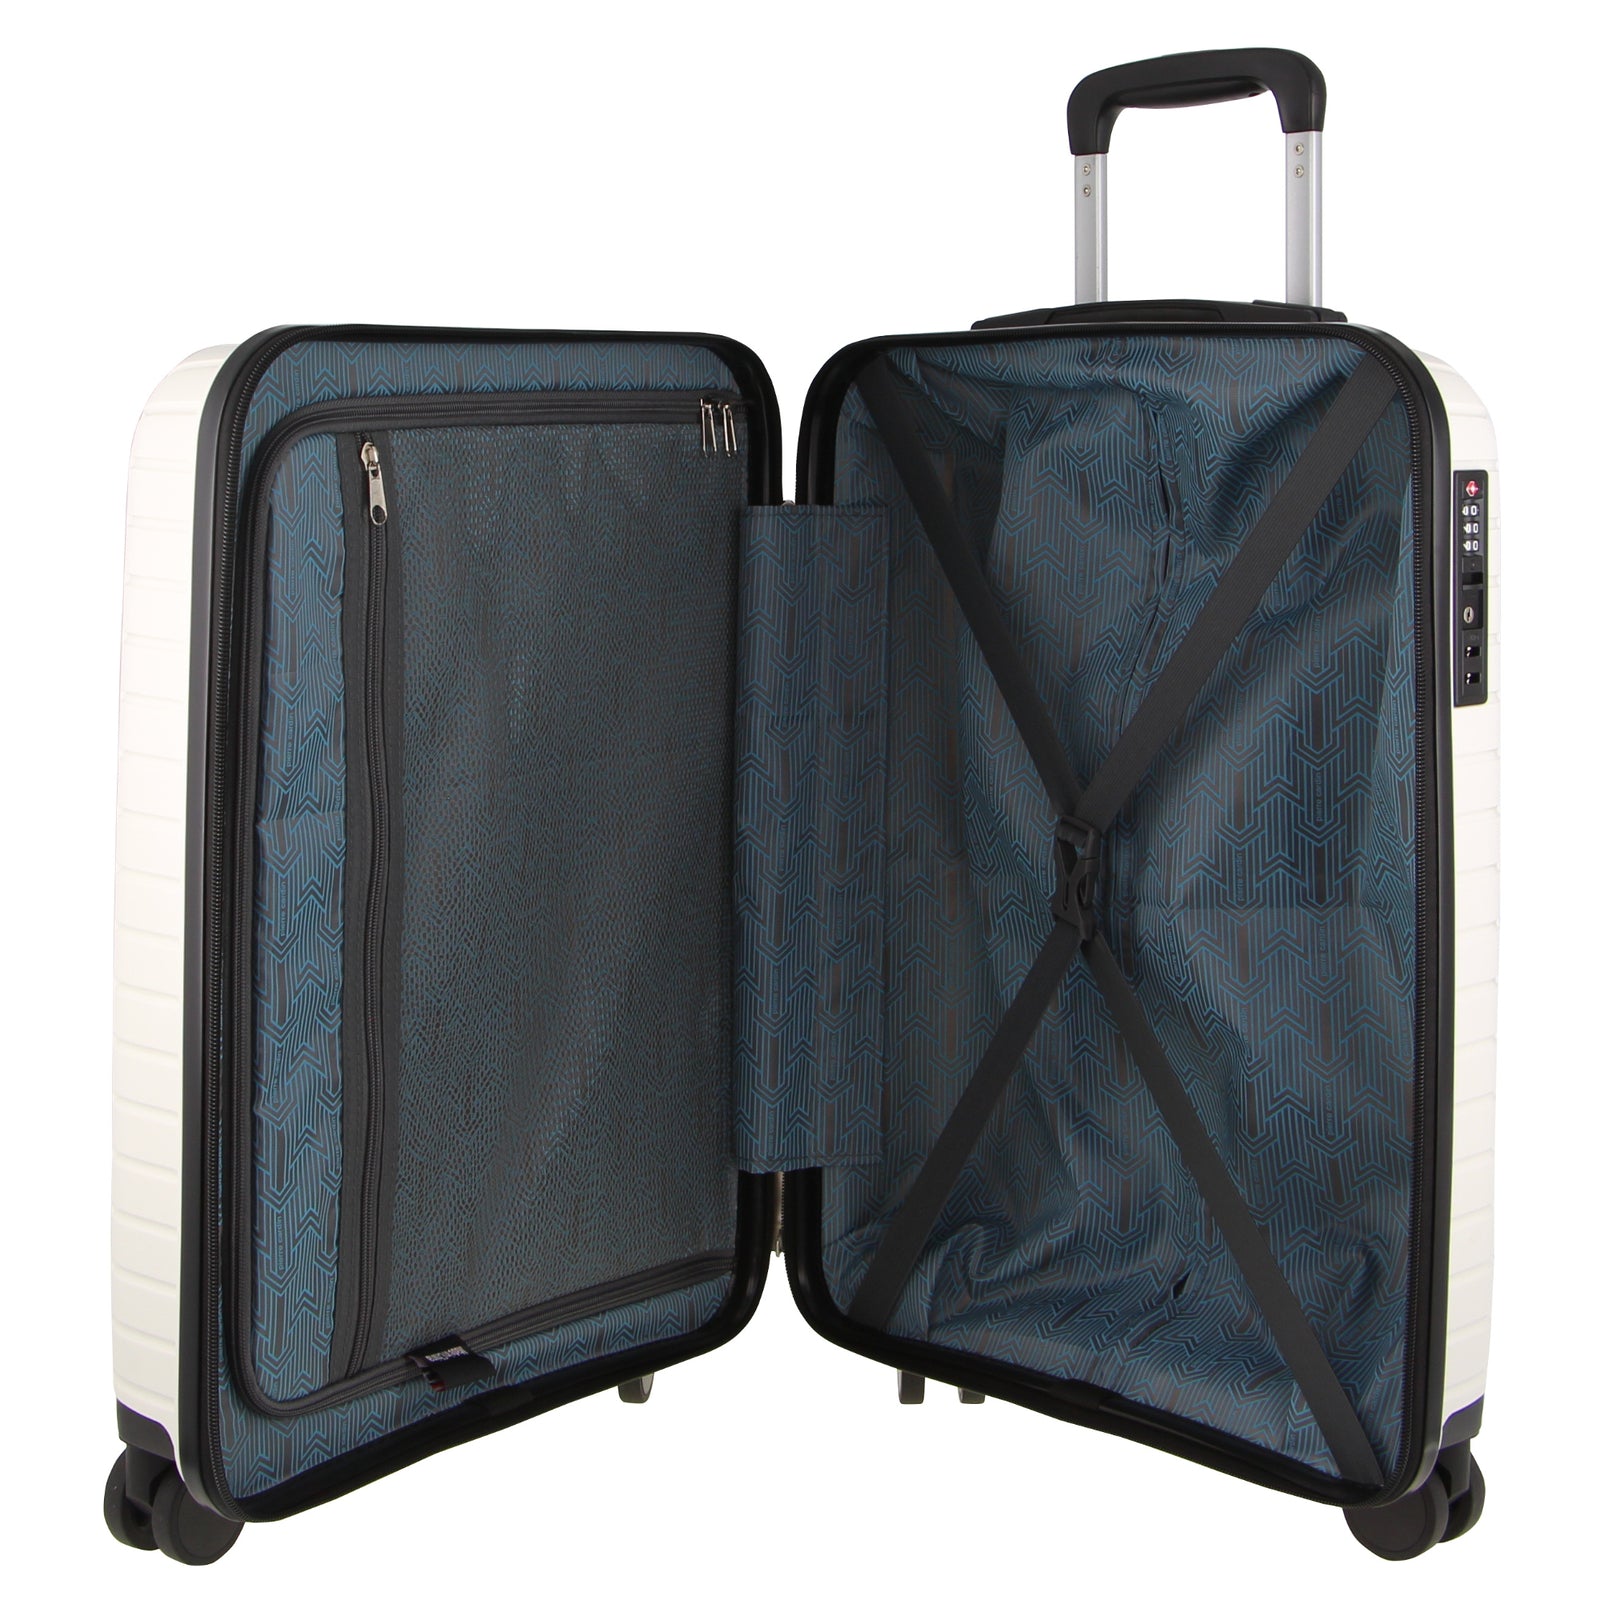 76cm Large Hard-Shell Suitcase Travel Luggage Bag - White